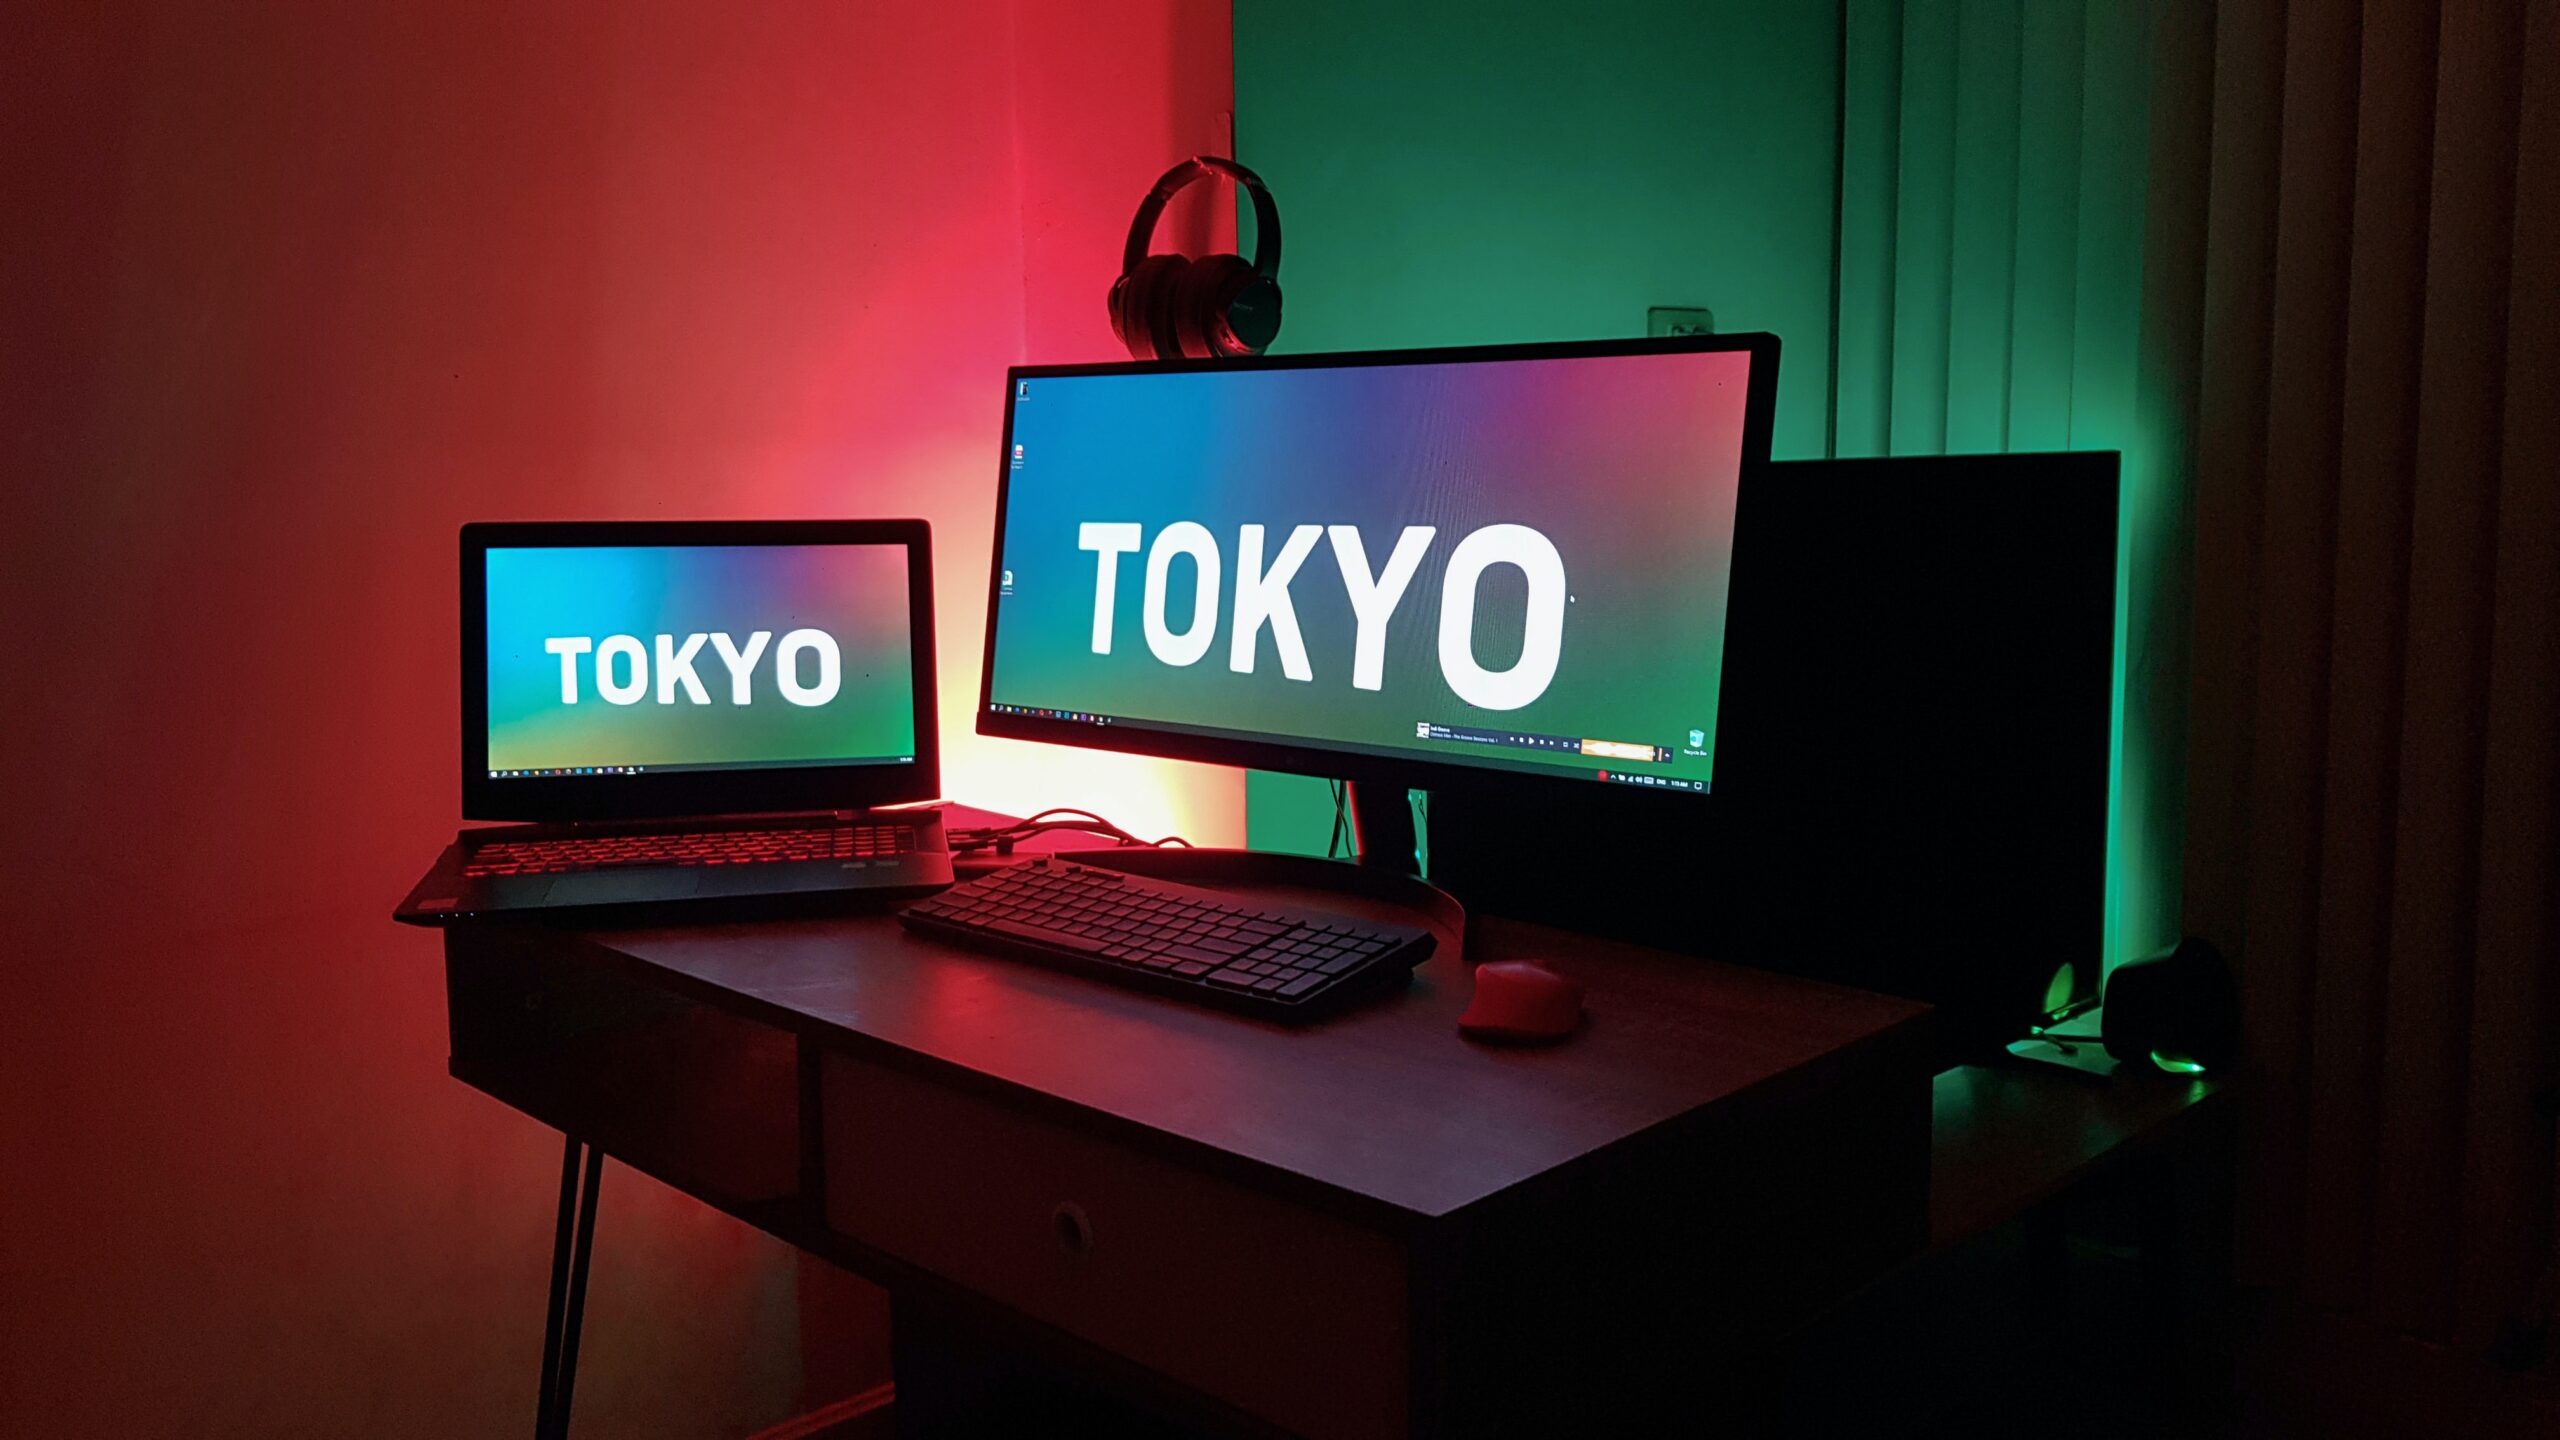 TOKYOと書かれたデスクトップ画面が写ったパソコンの写真